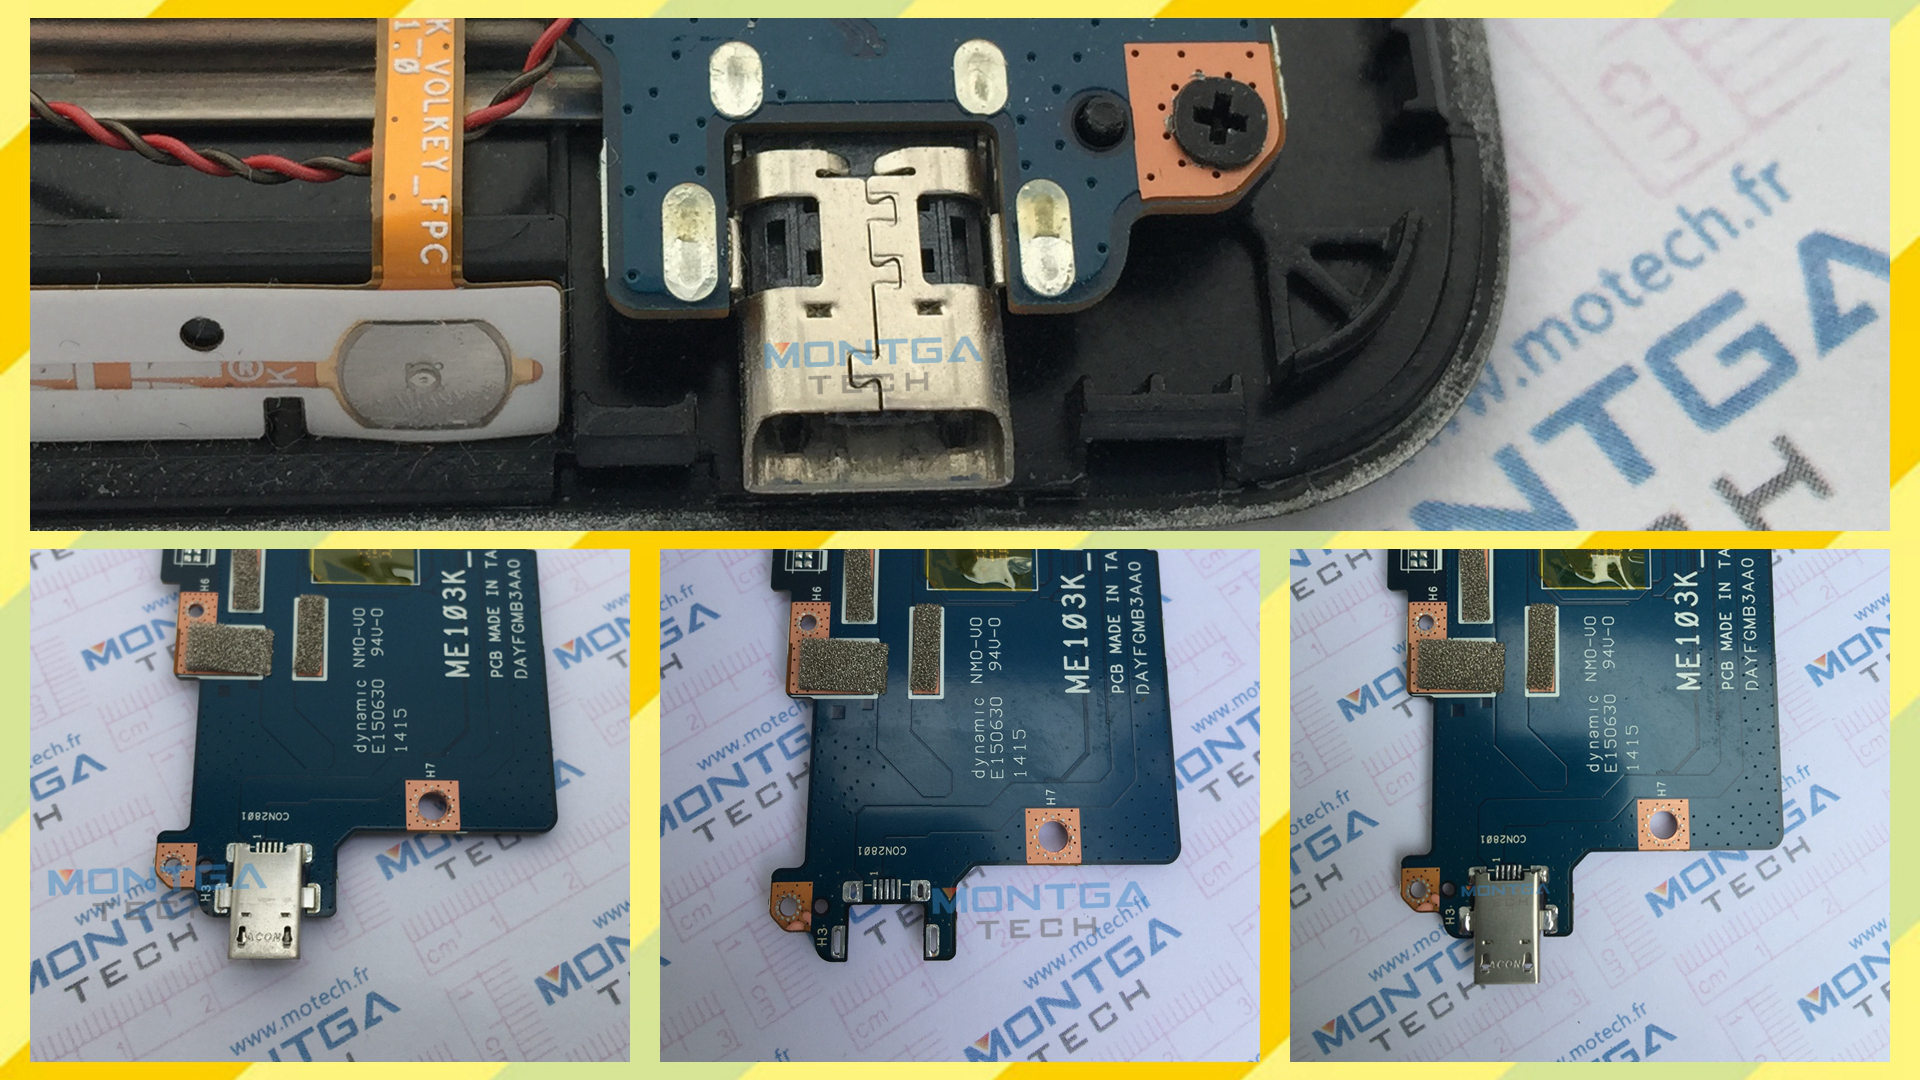 repair charging connector Asus MeMO-Pad-10-ME103K, repair DC Power Jack Asus MeMO-Pad-10-ME103K, repair plug Asus MeMO-Pad-10-ME103K,repair Jack socket Asus MeMO-Pad-10-ME103K,repair Micro USB Asus MeMO-Pad-10-ME103K,